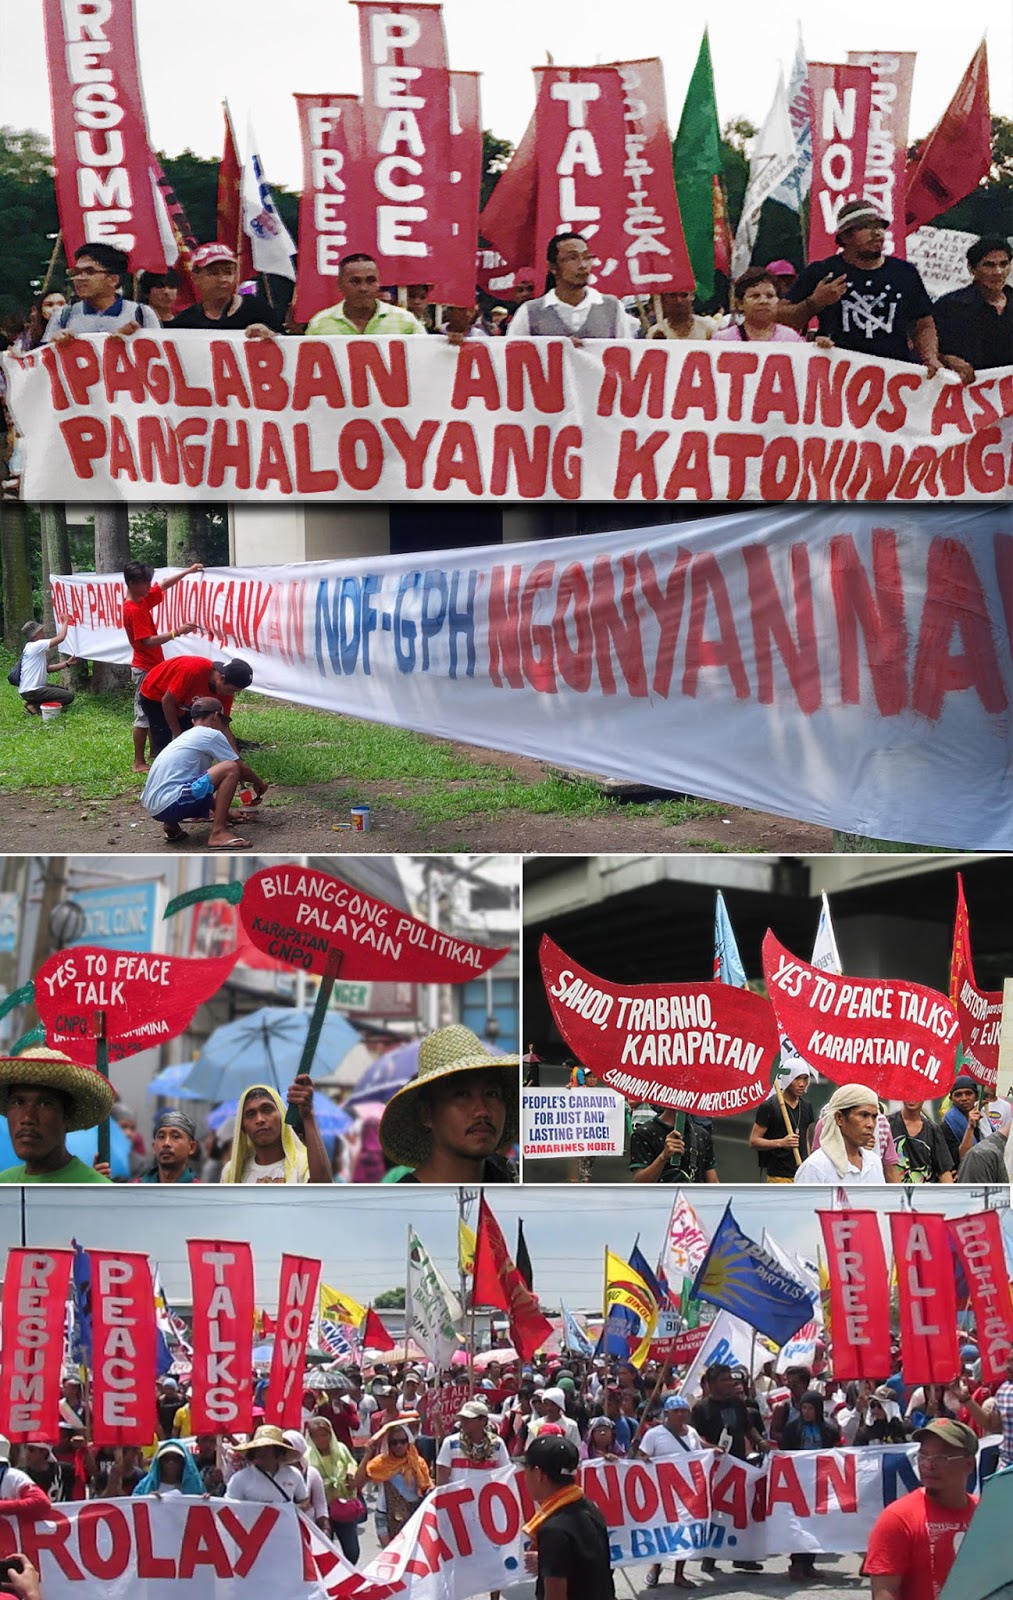 katarungang panlipunan - philippin news collections